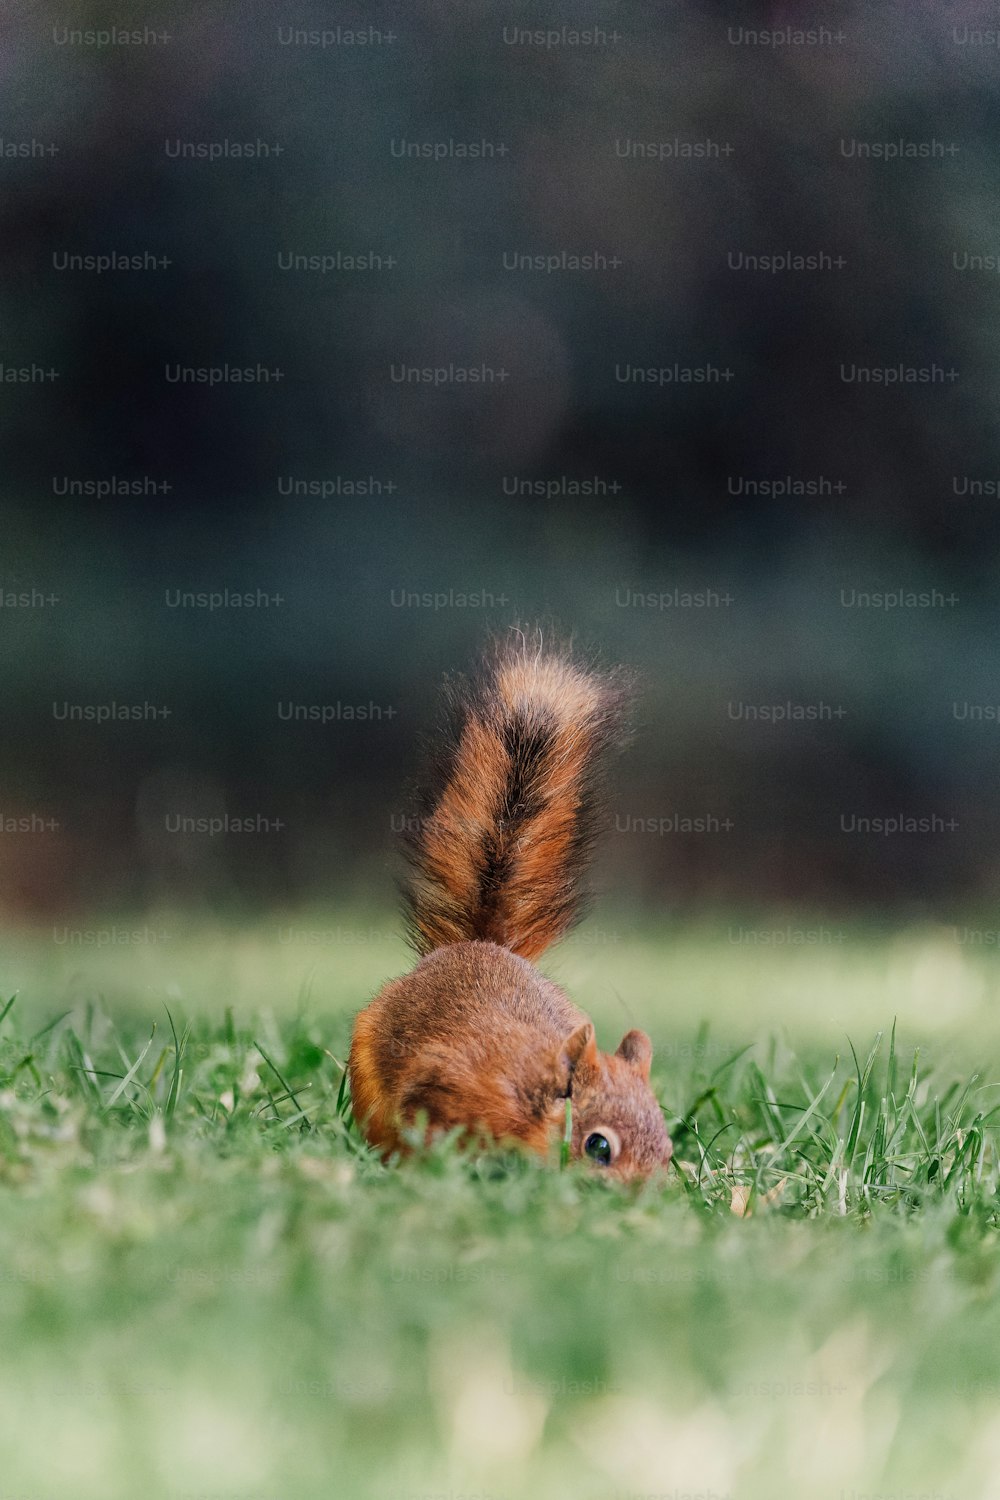 붉은 다람쥐가 풀밭에 앉아 있다